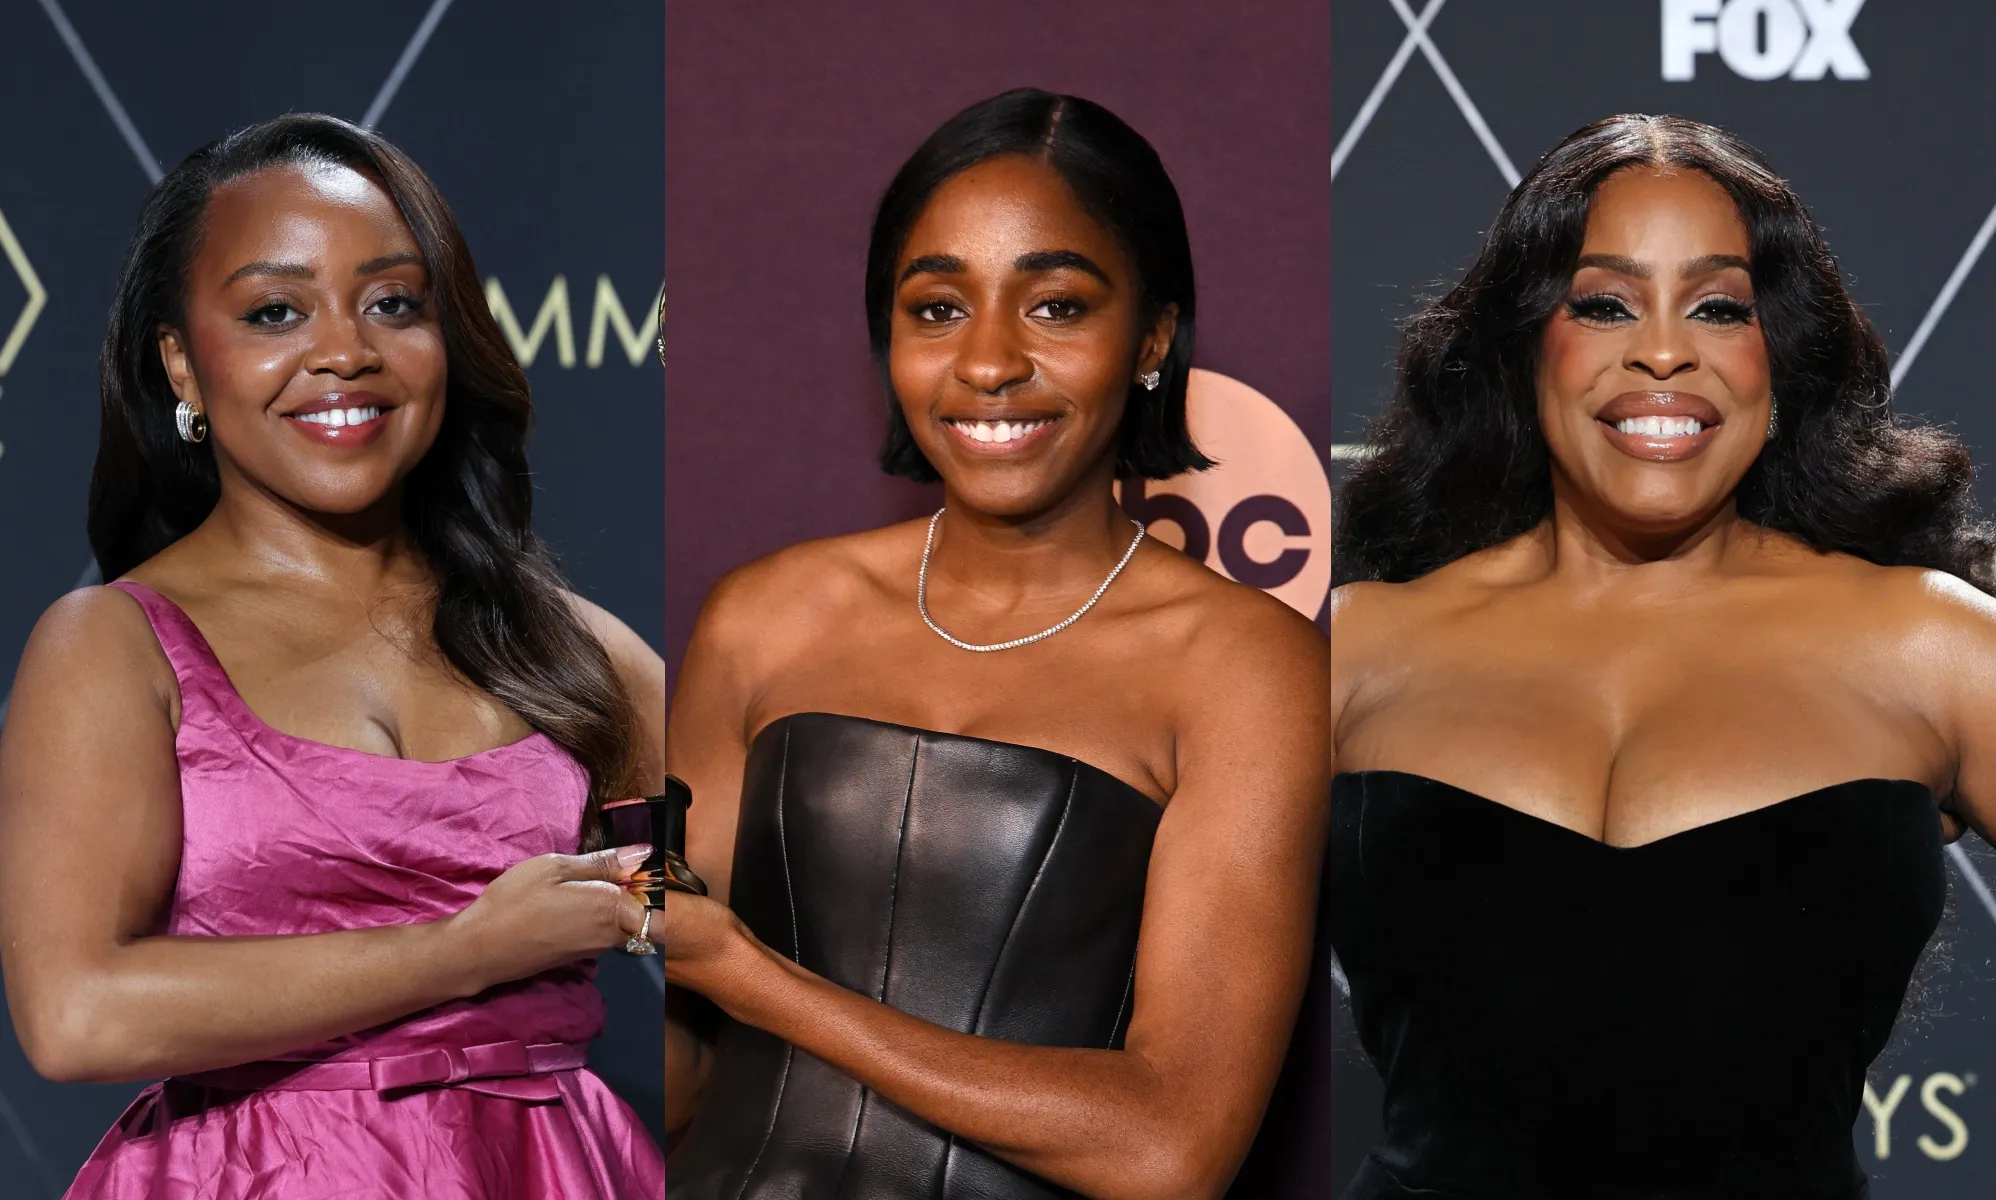 La noche de los Emmy fue histórica para las mujeres negras, pero no debe ocultar los problemas de diversidad de Hollywood